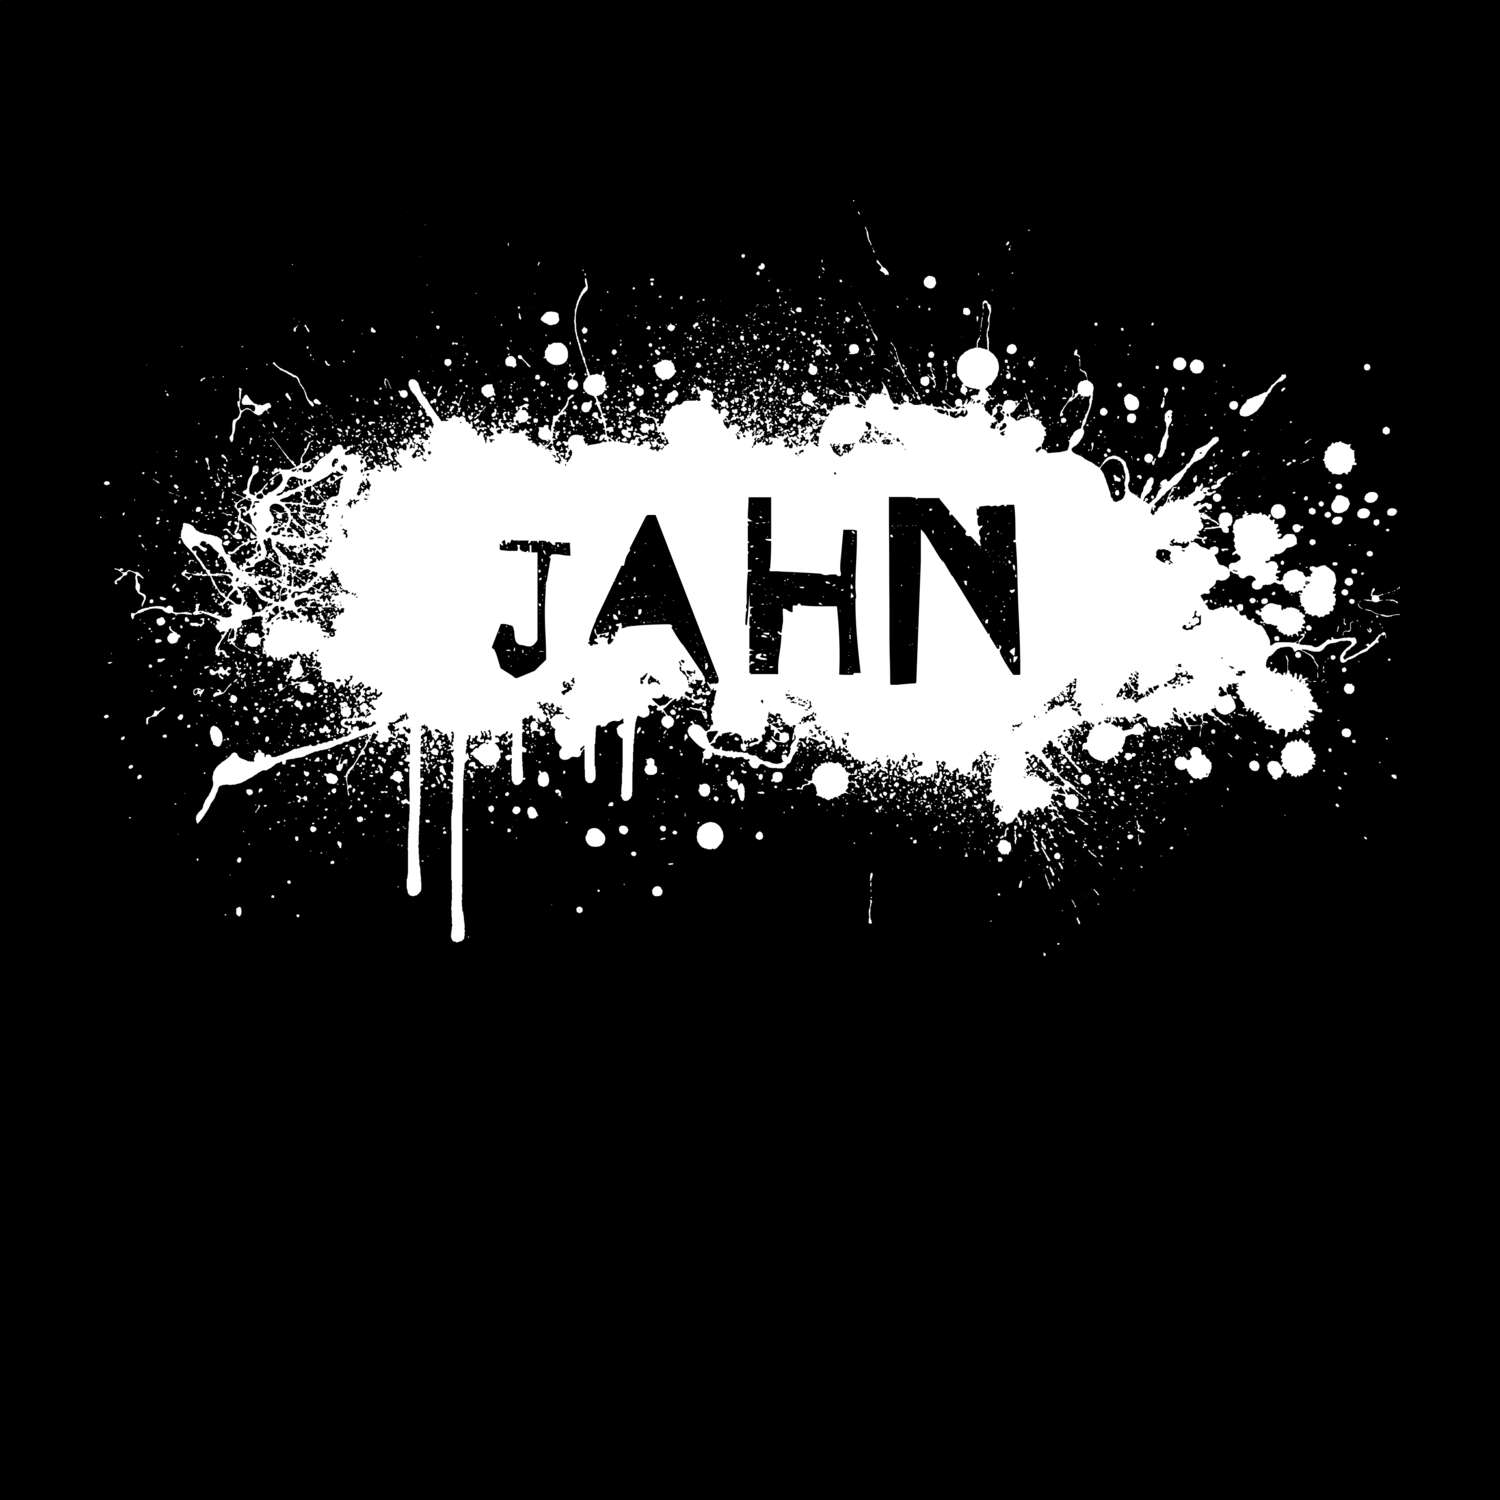 Jahn T-Shirt »Paint Splash Punk«